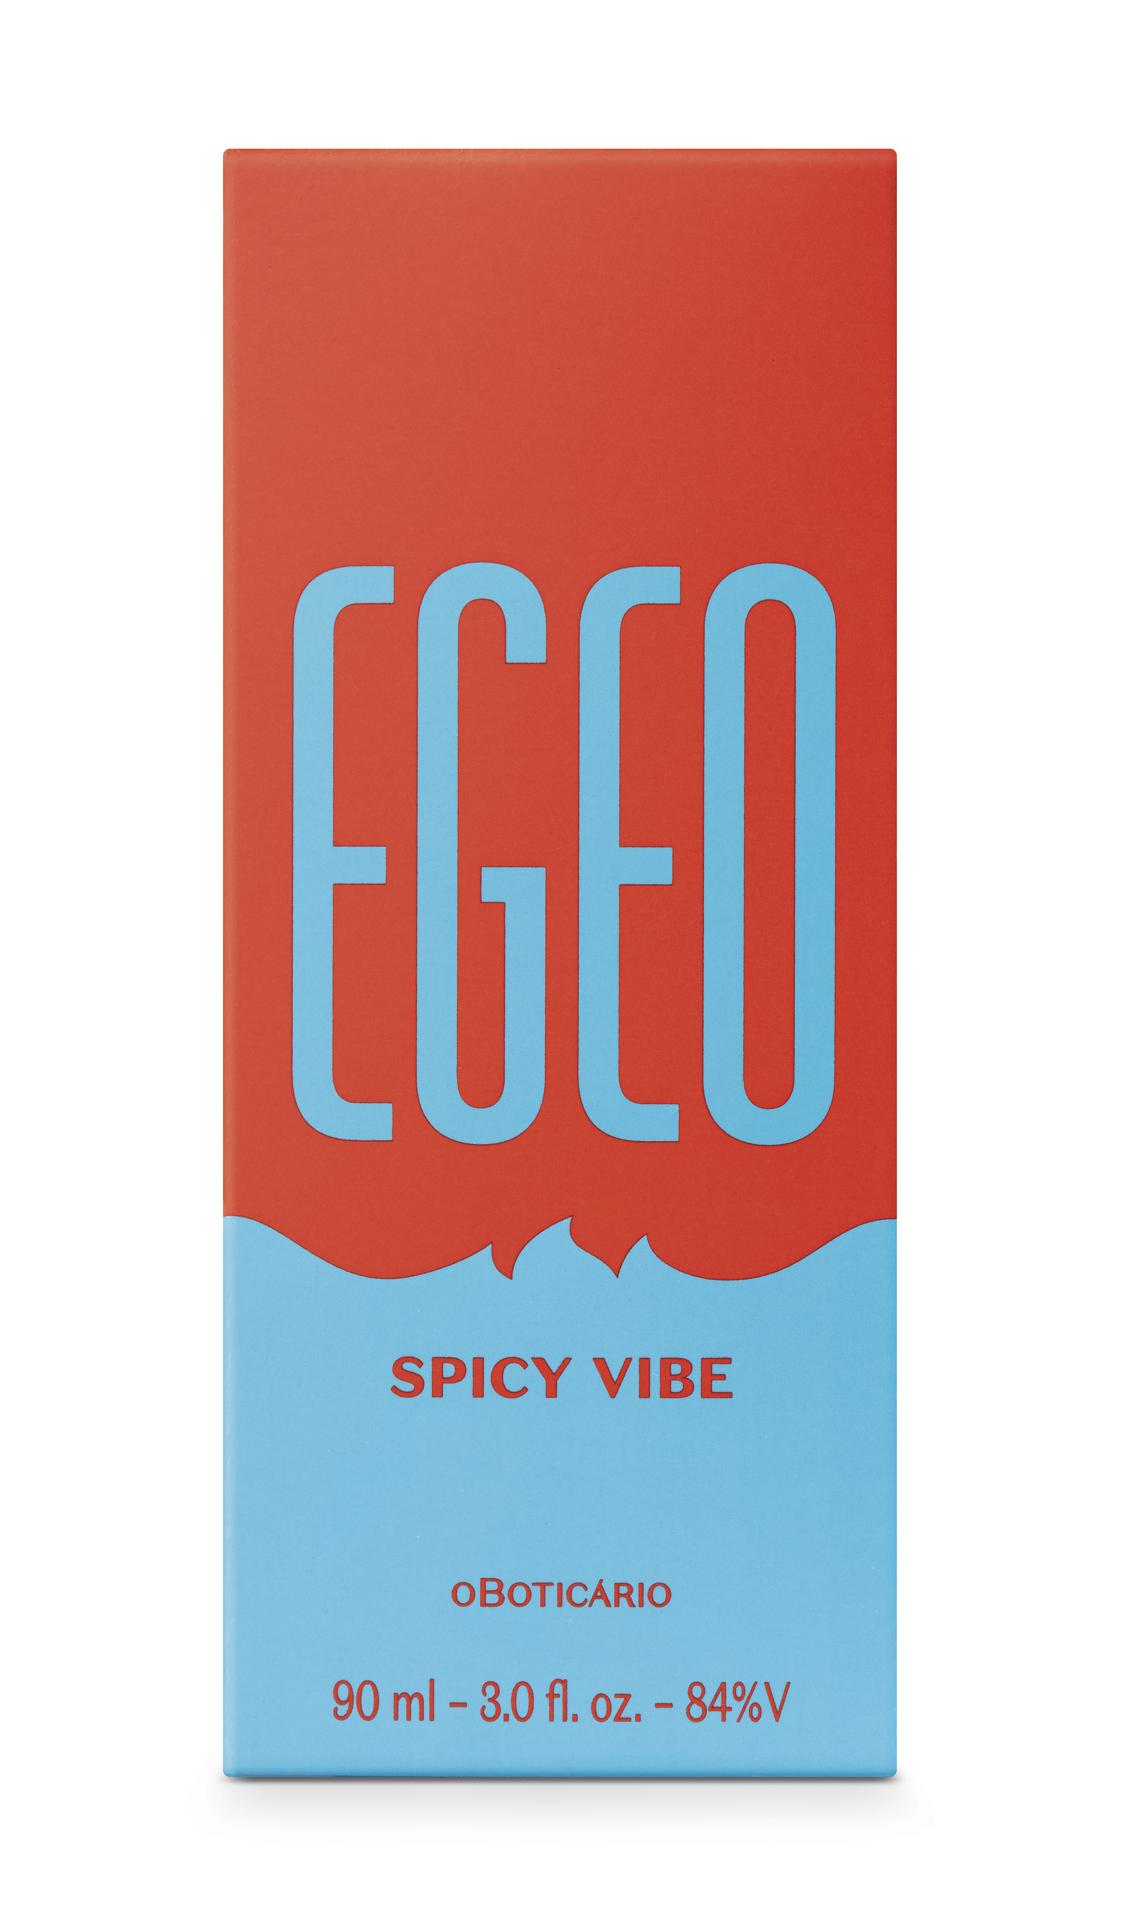 Egeo Spicy Vibe Eau de Toilette, 90ml